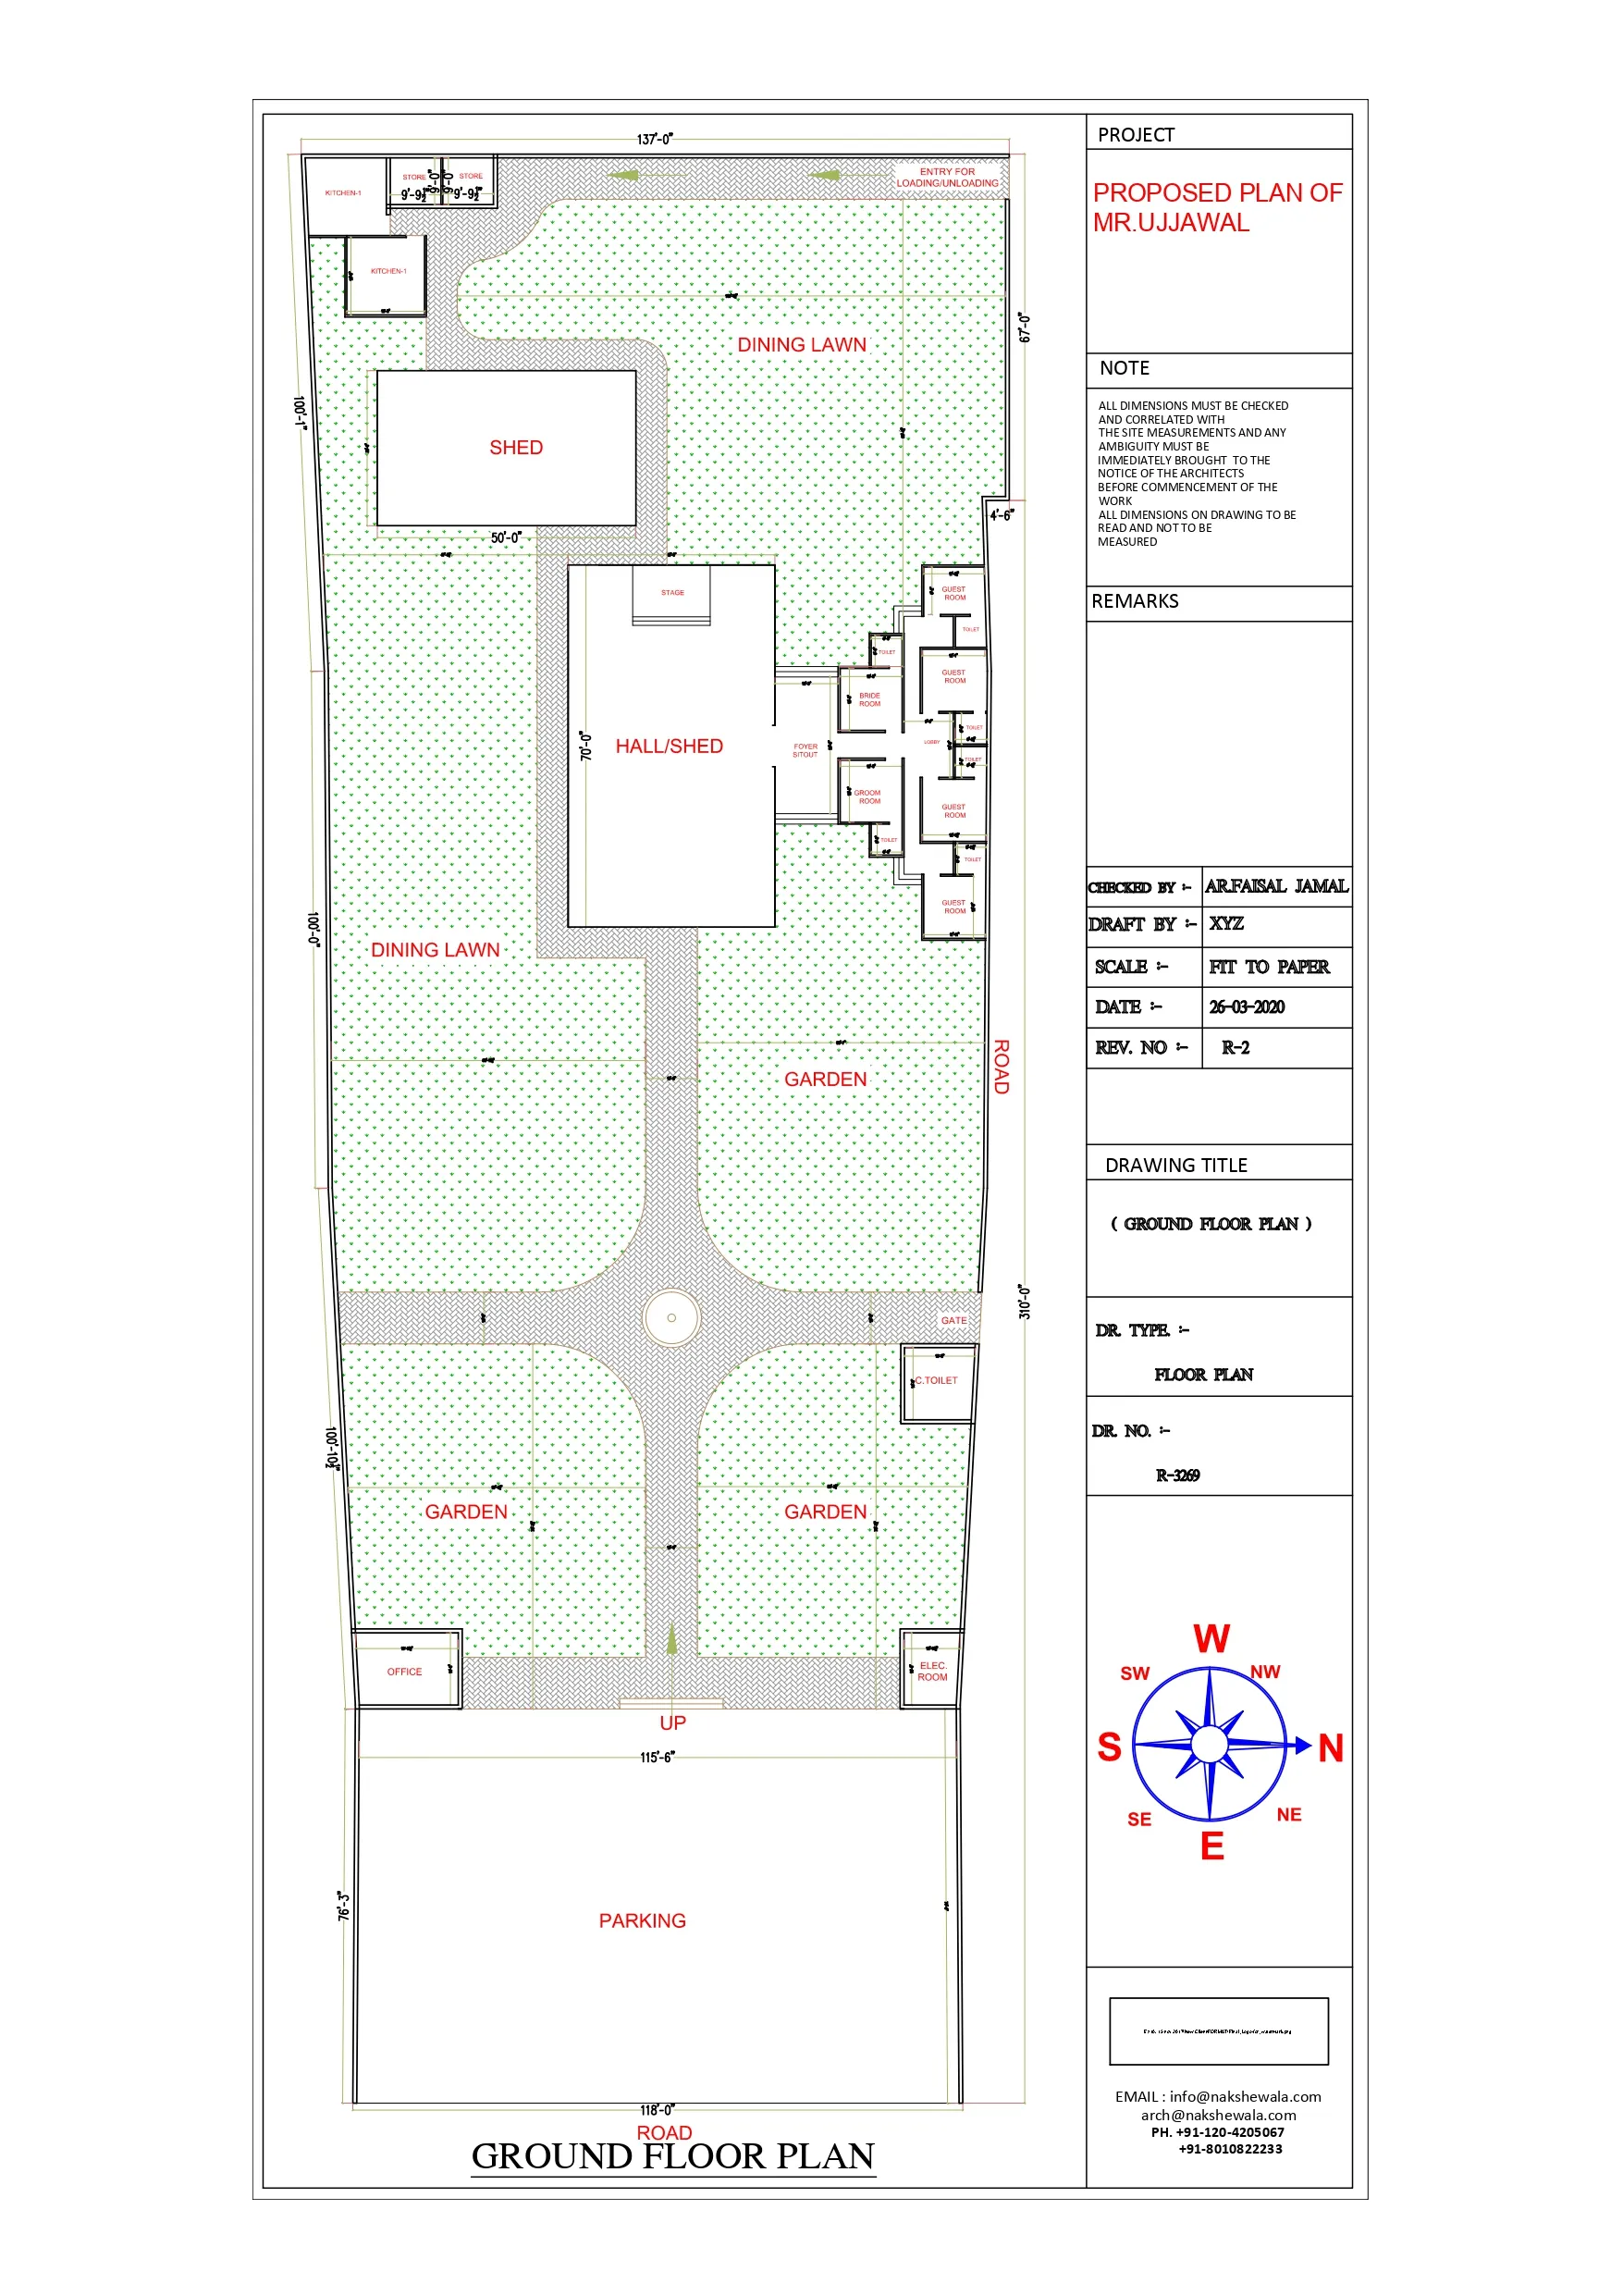 137x301sqft Banquet Hall Floor Plan